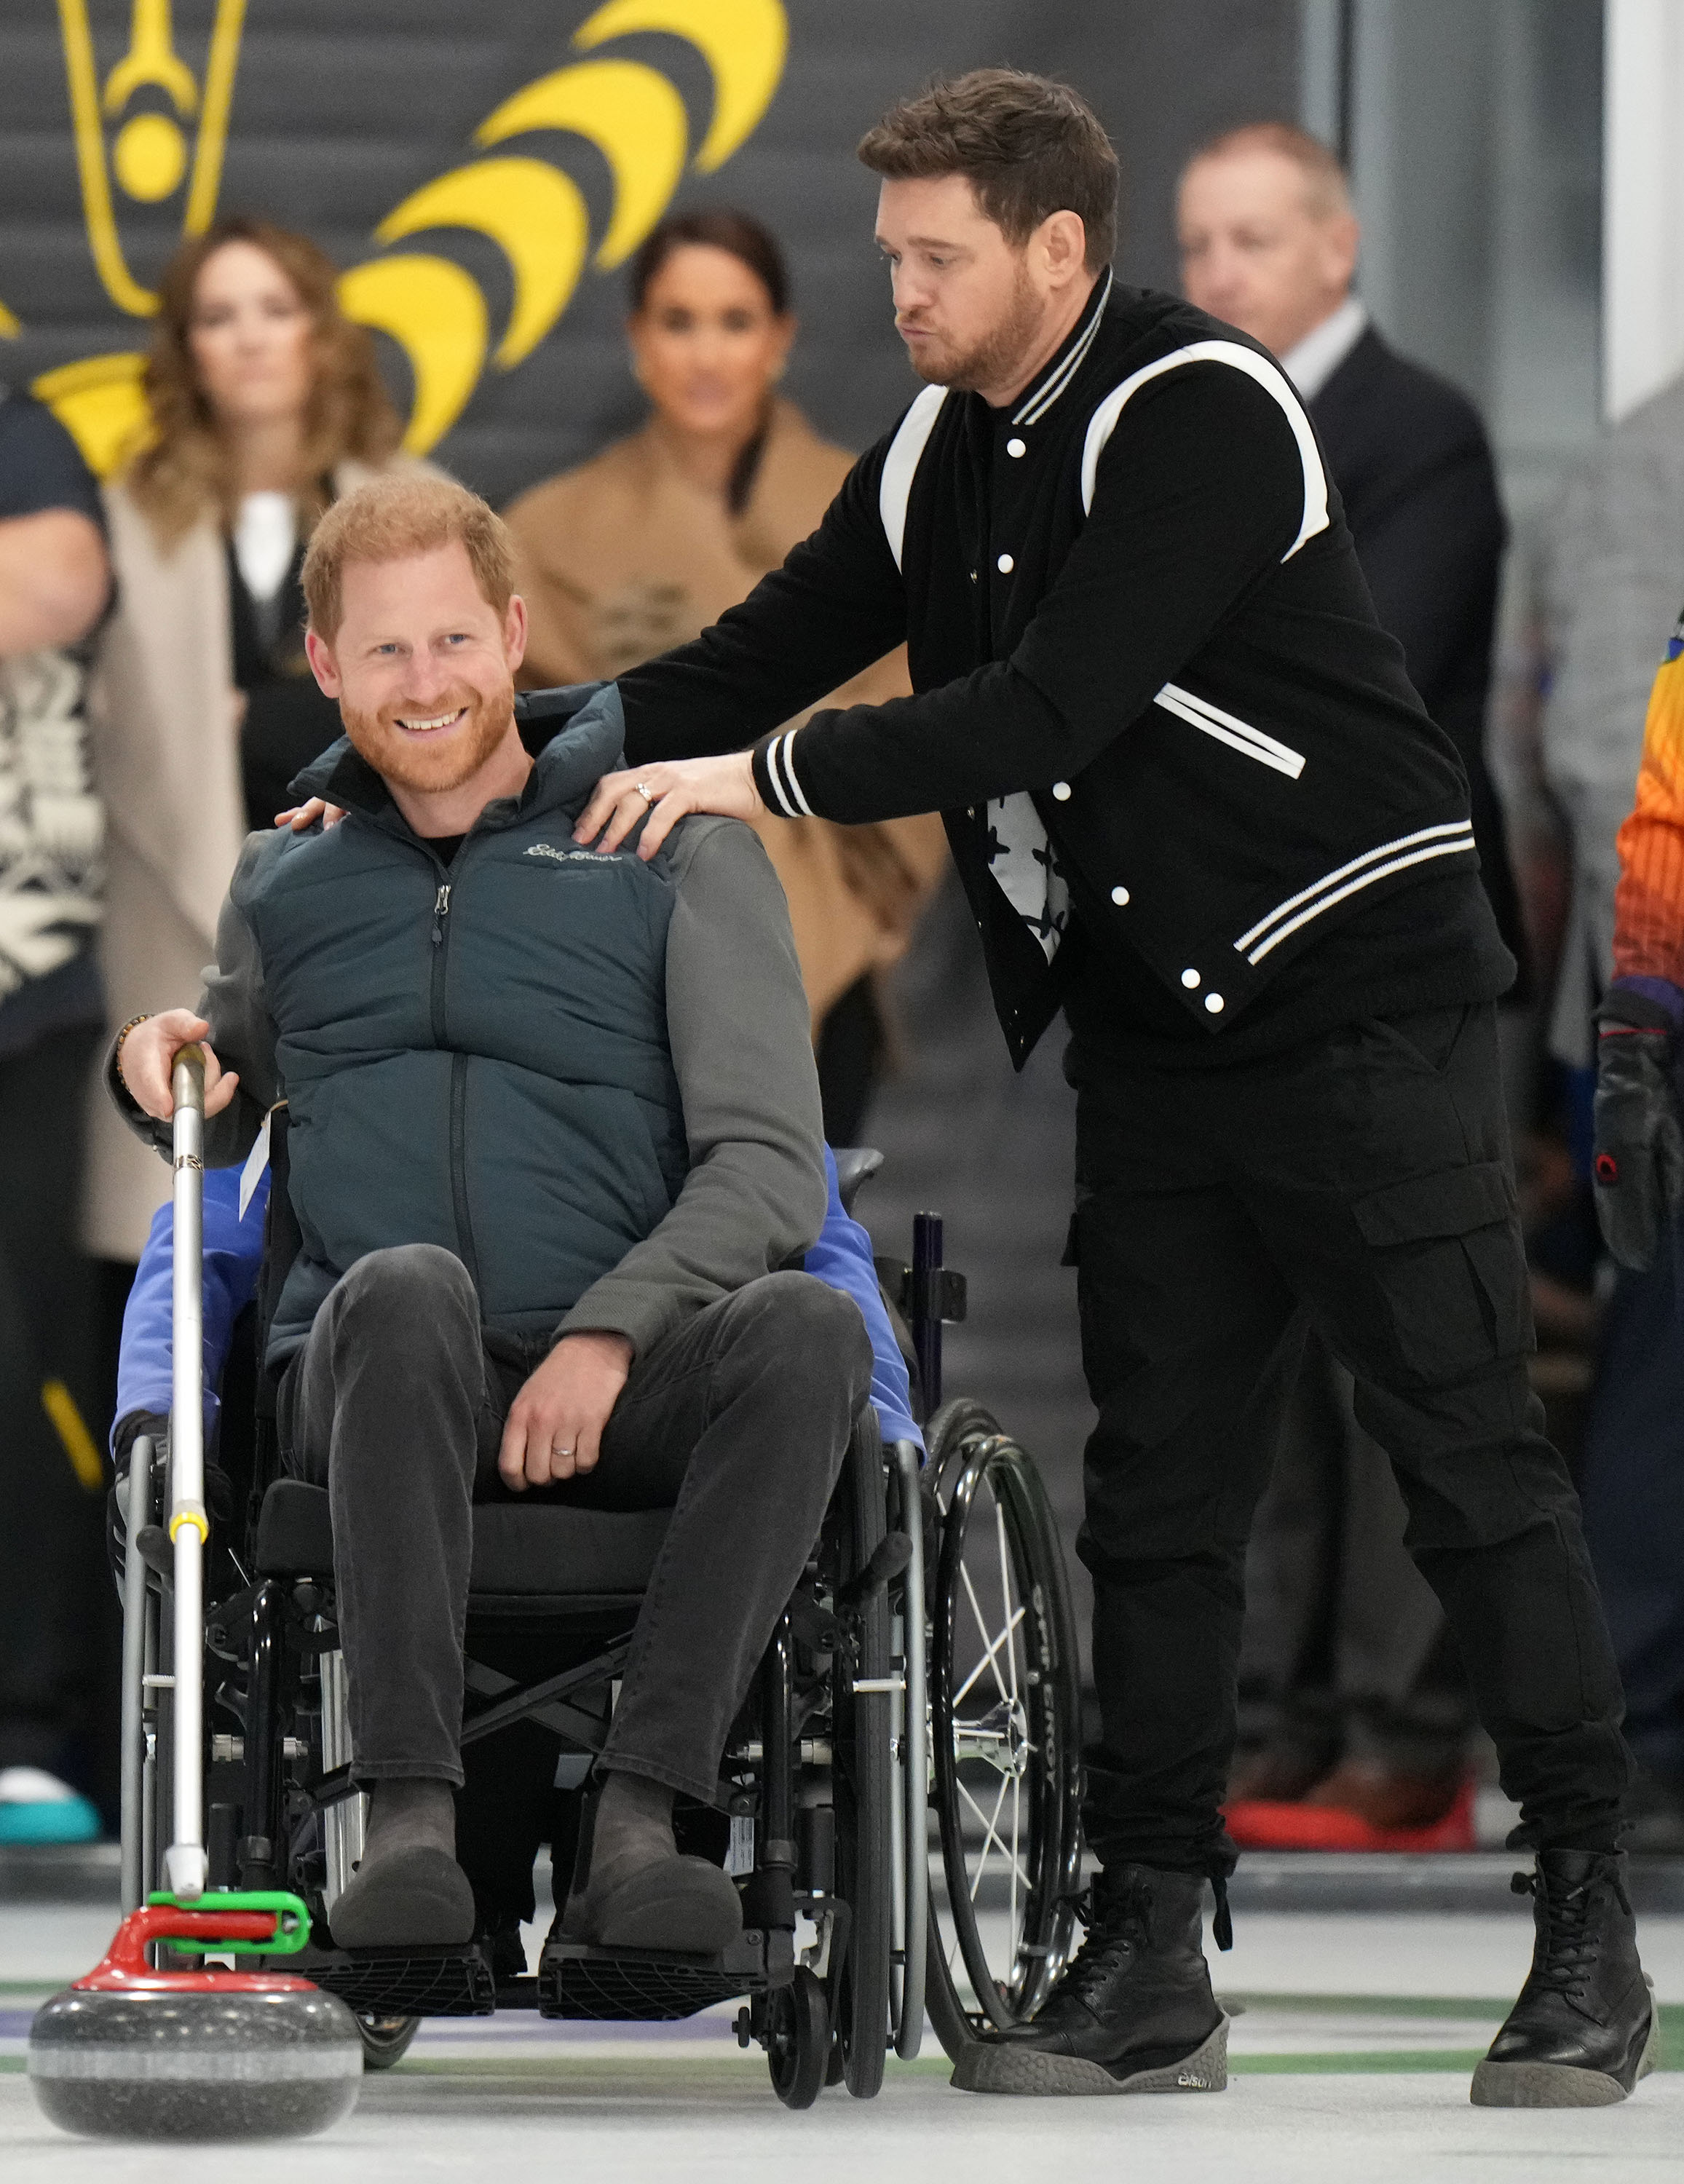 El príncipe Harry era todo sonrisas mientras intentaba hacer curling con Michael Bublé en Canadá hoy.